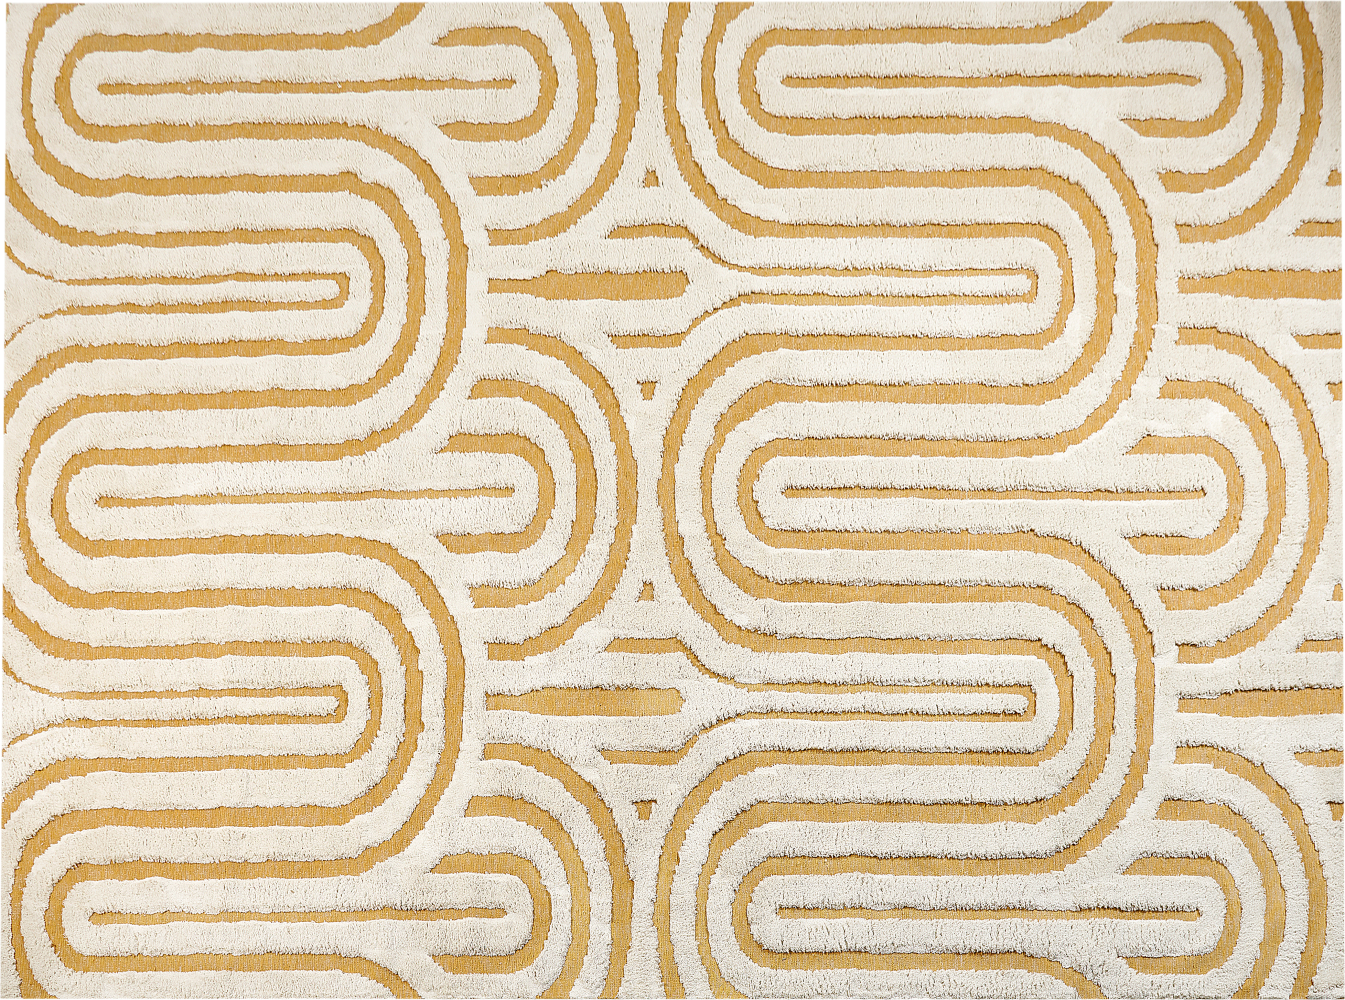 Teppich Baumwolle cremeweiß gelb 300 x 400 cm abstraktes Muster PERAI Bild 1